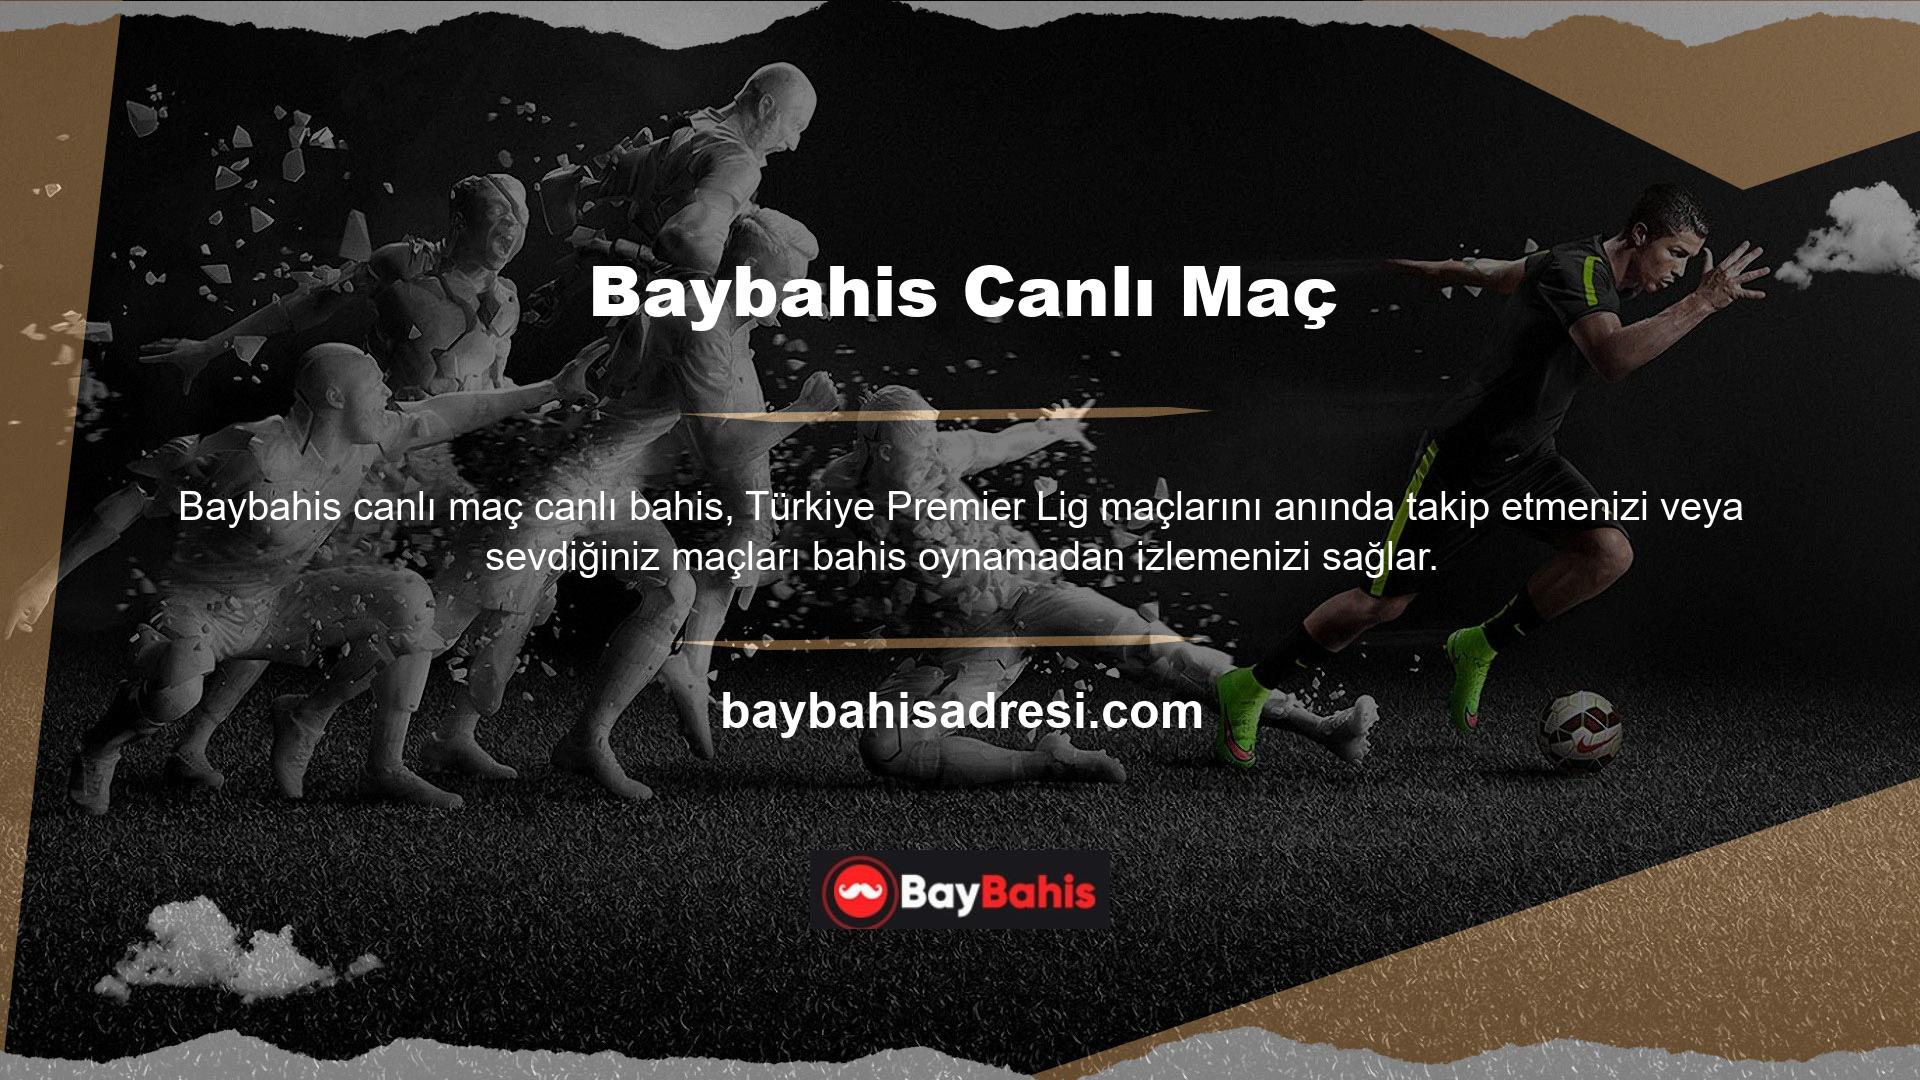 Çevrimiçi bahis şirketi Baybahis adını aratıp mevcut adresi açarsanız, ayrı bir pencerede oyun yayın sayfasına yönlendirileceksiniz